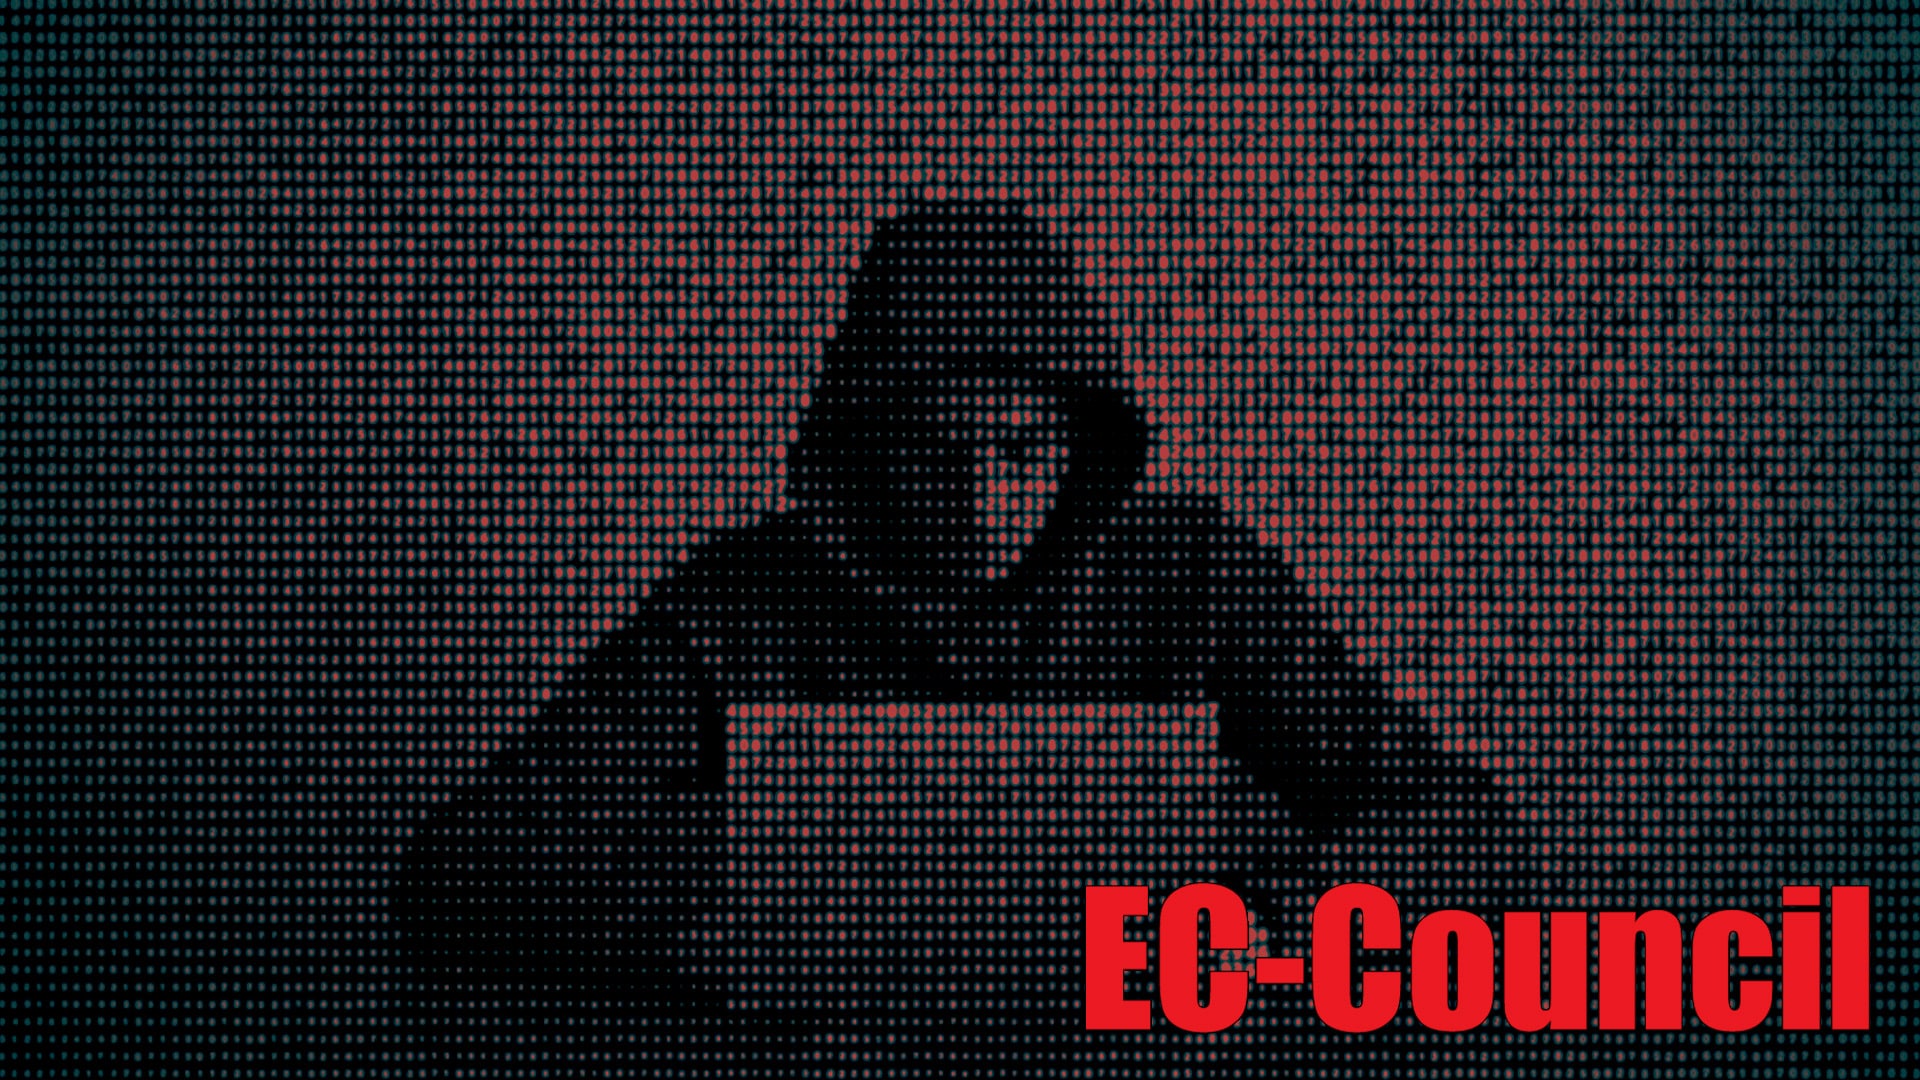 EC-Council: As Melhores Certificações Ethical Hacker em cibersegurança